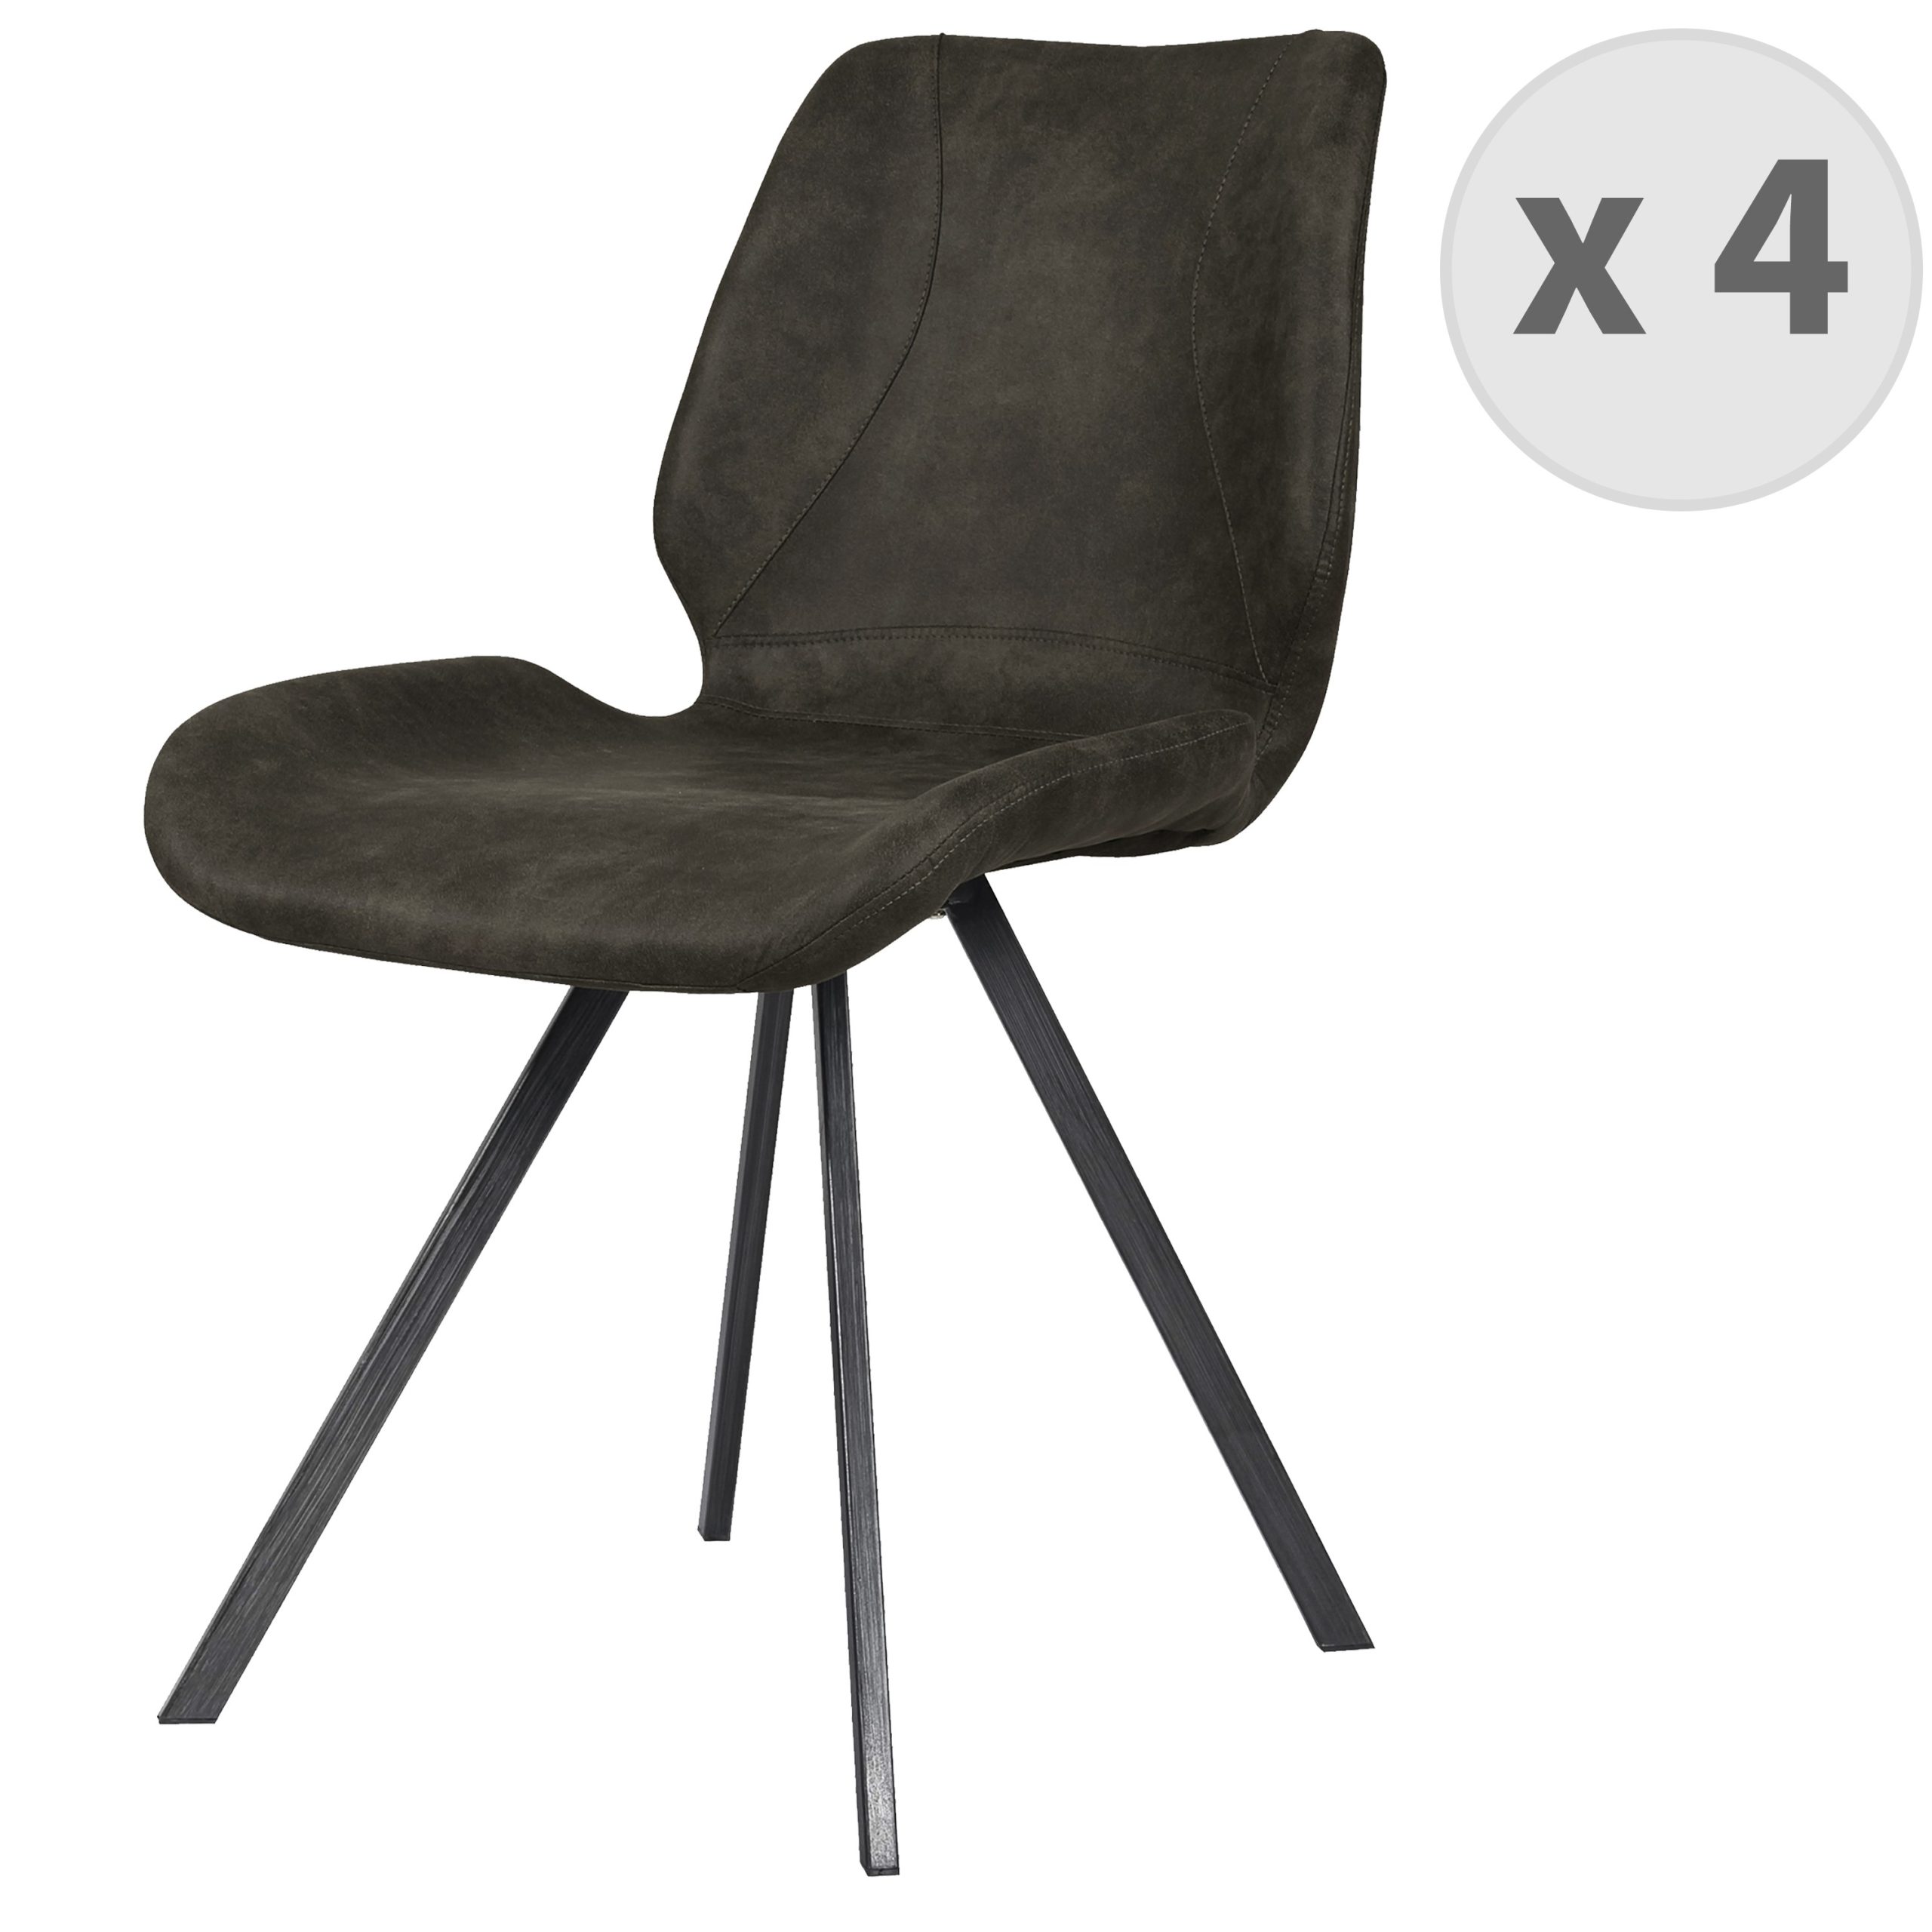 Chaise industrielle micro vintage marron foncé/métal noir brossé (x4)